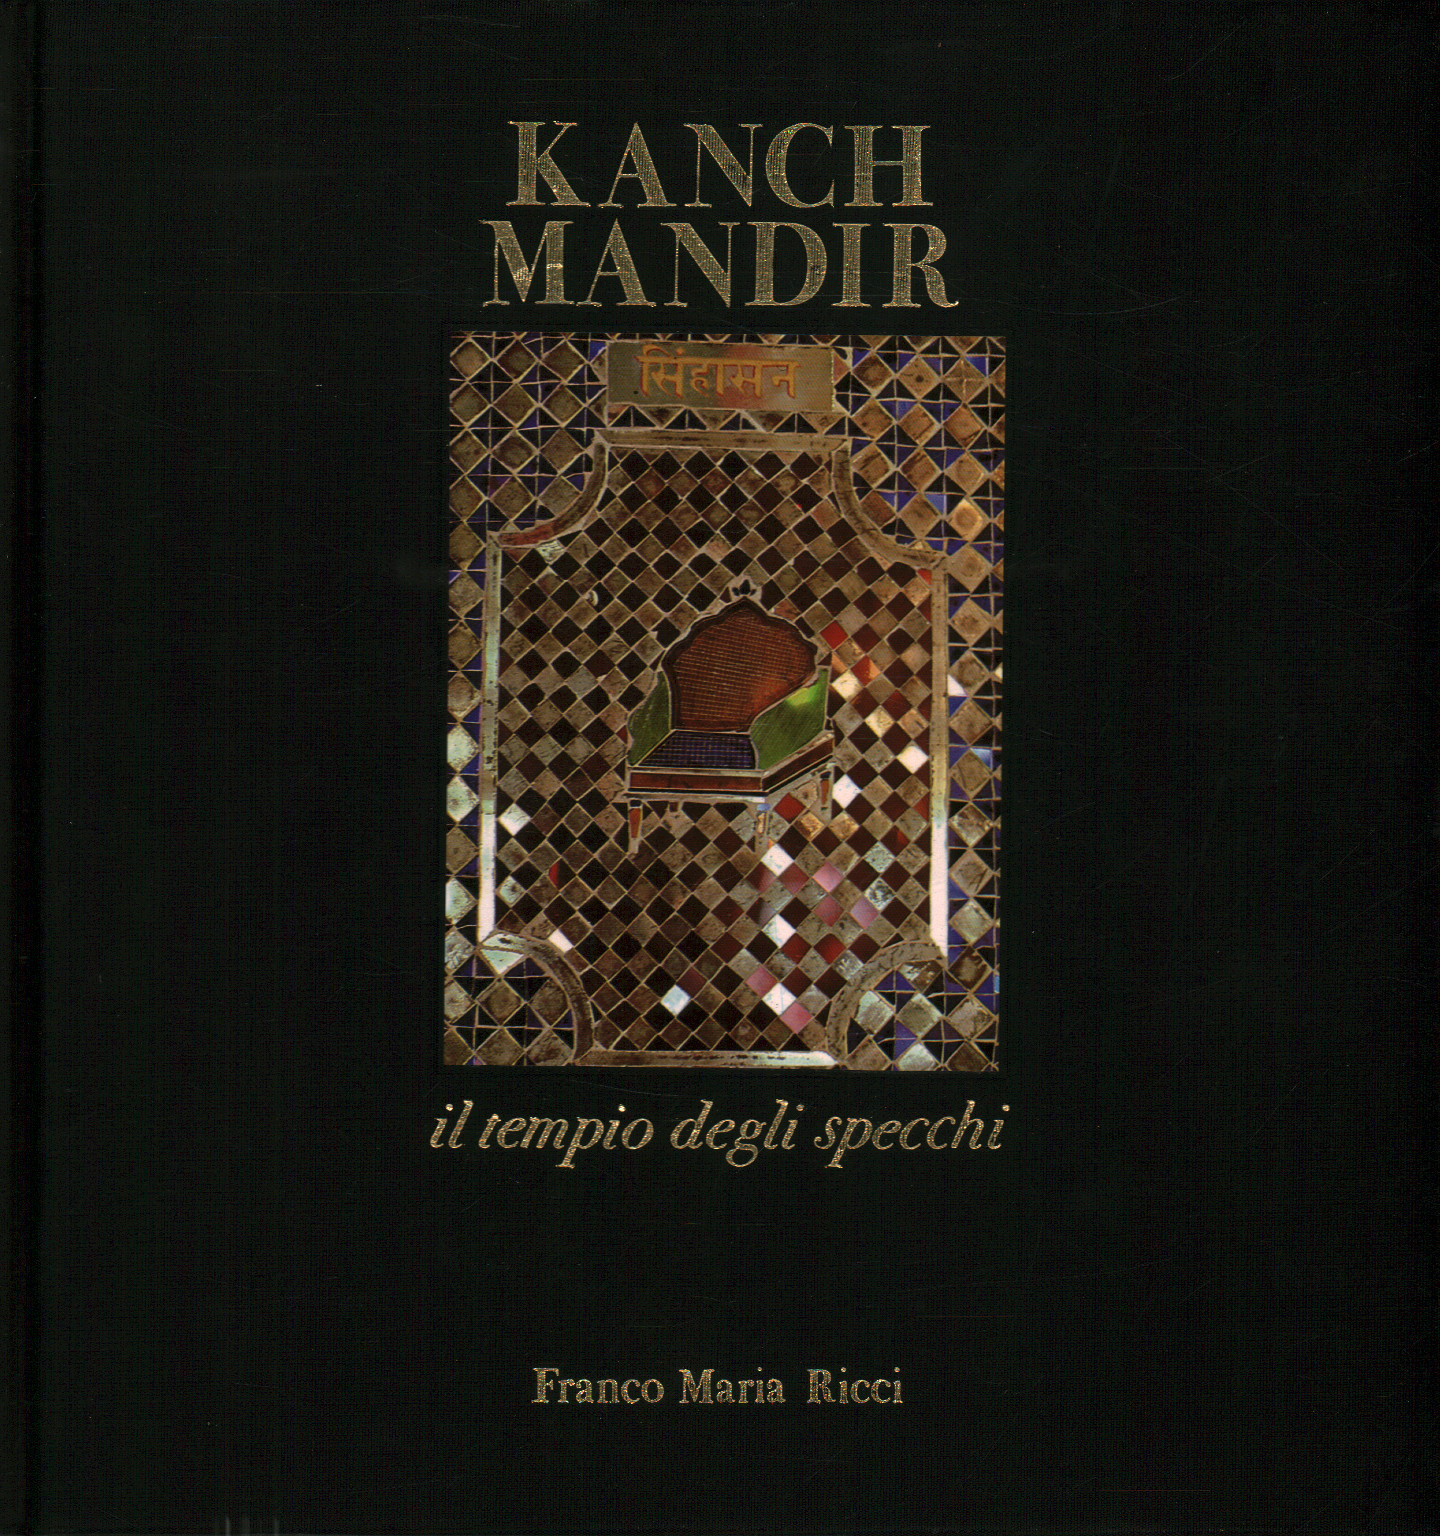 Kanch Mandir il tempio degli specchi, s.a.